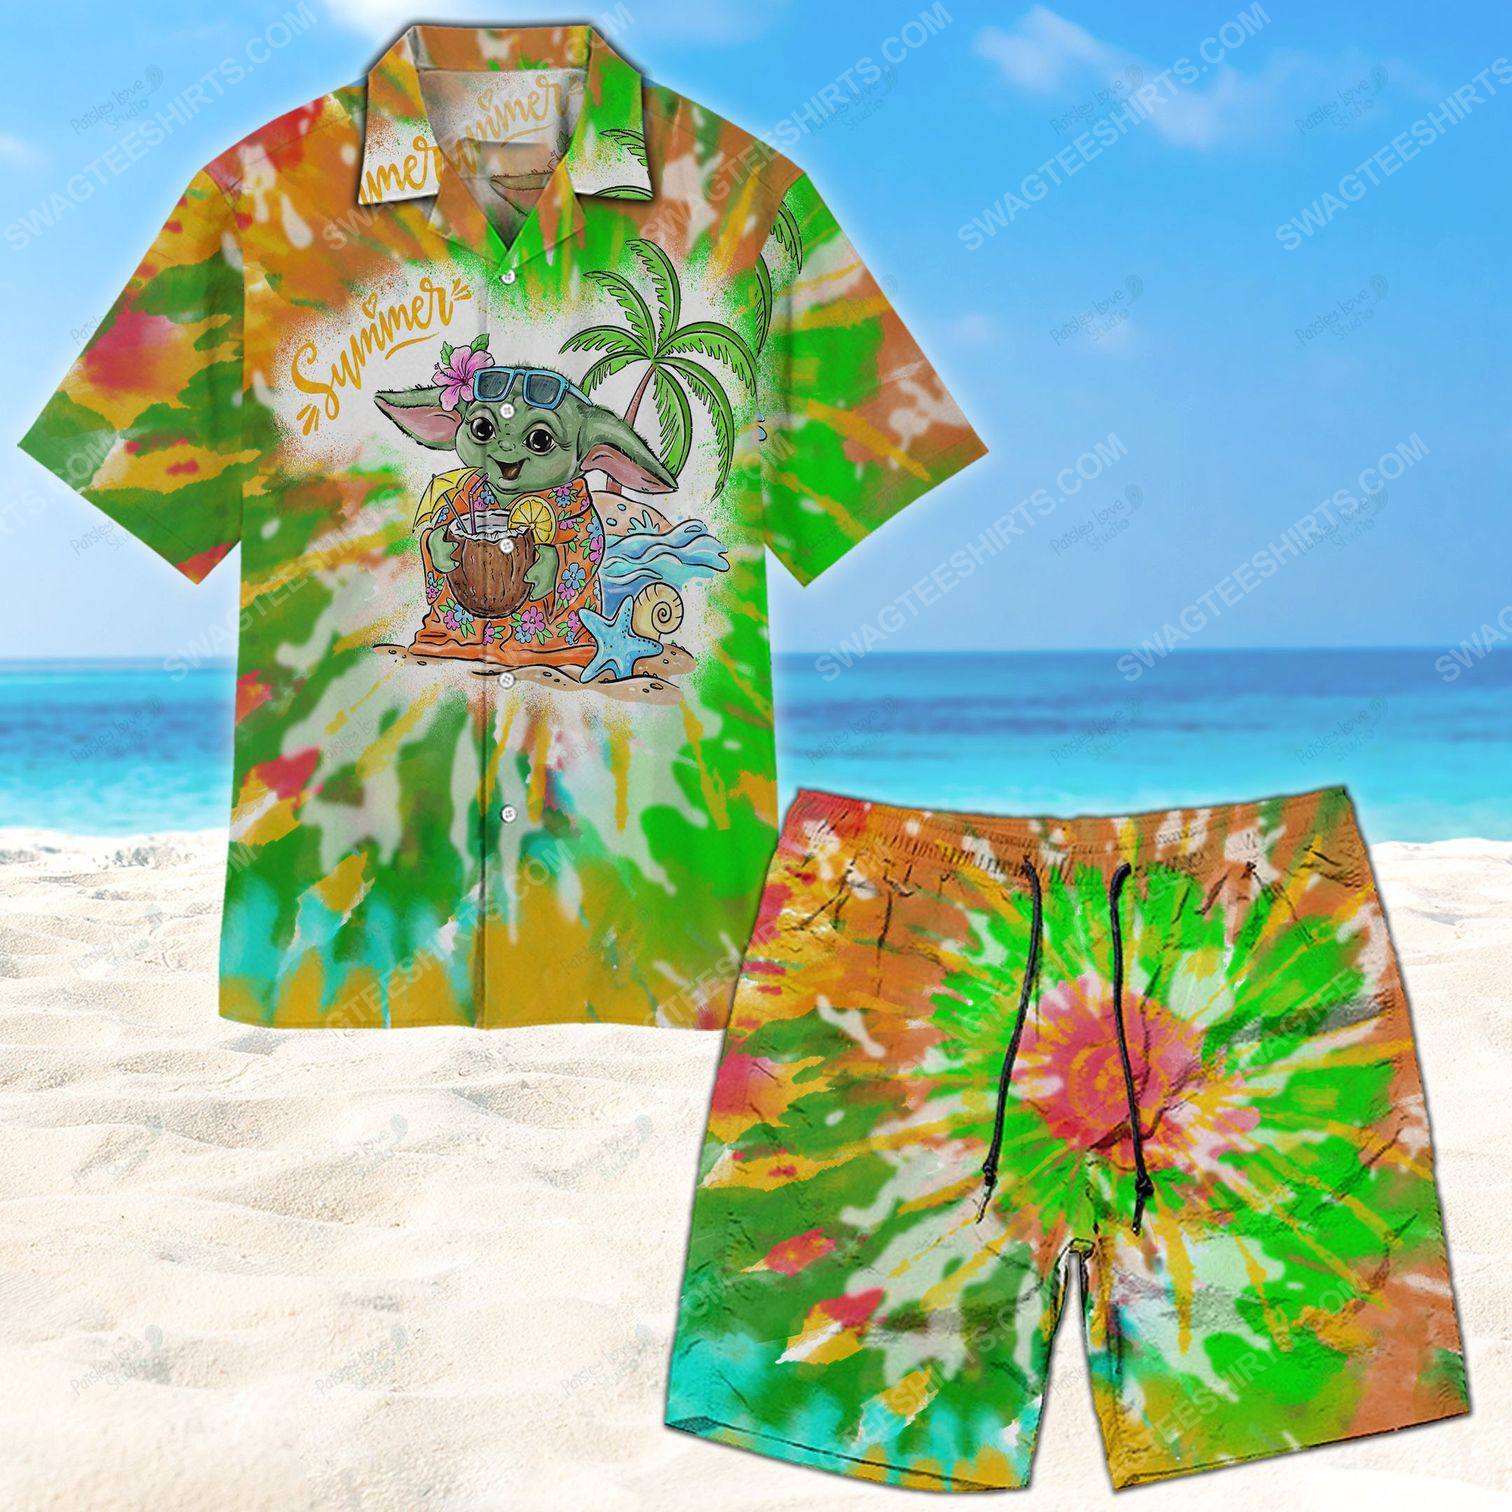 Baby yoda tie dye summer vacation hawaiian shirt